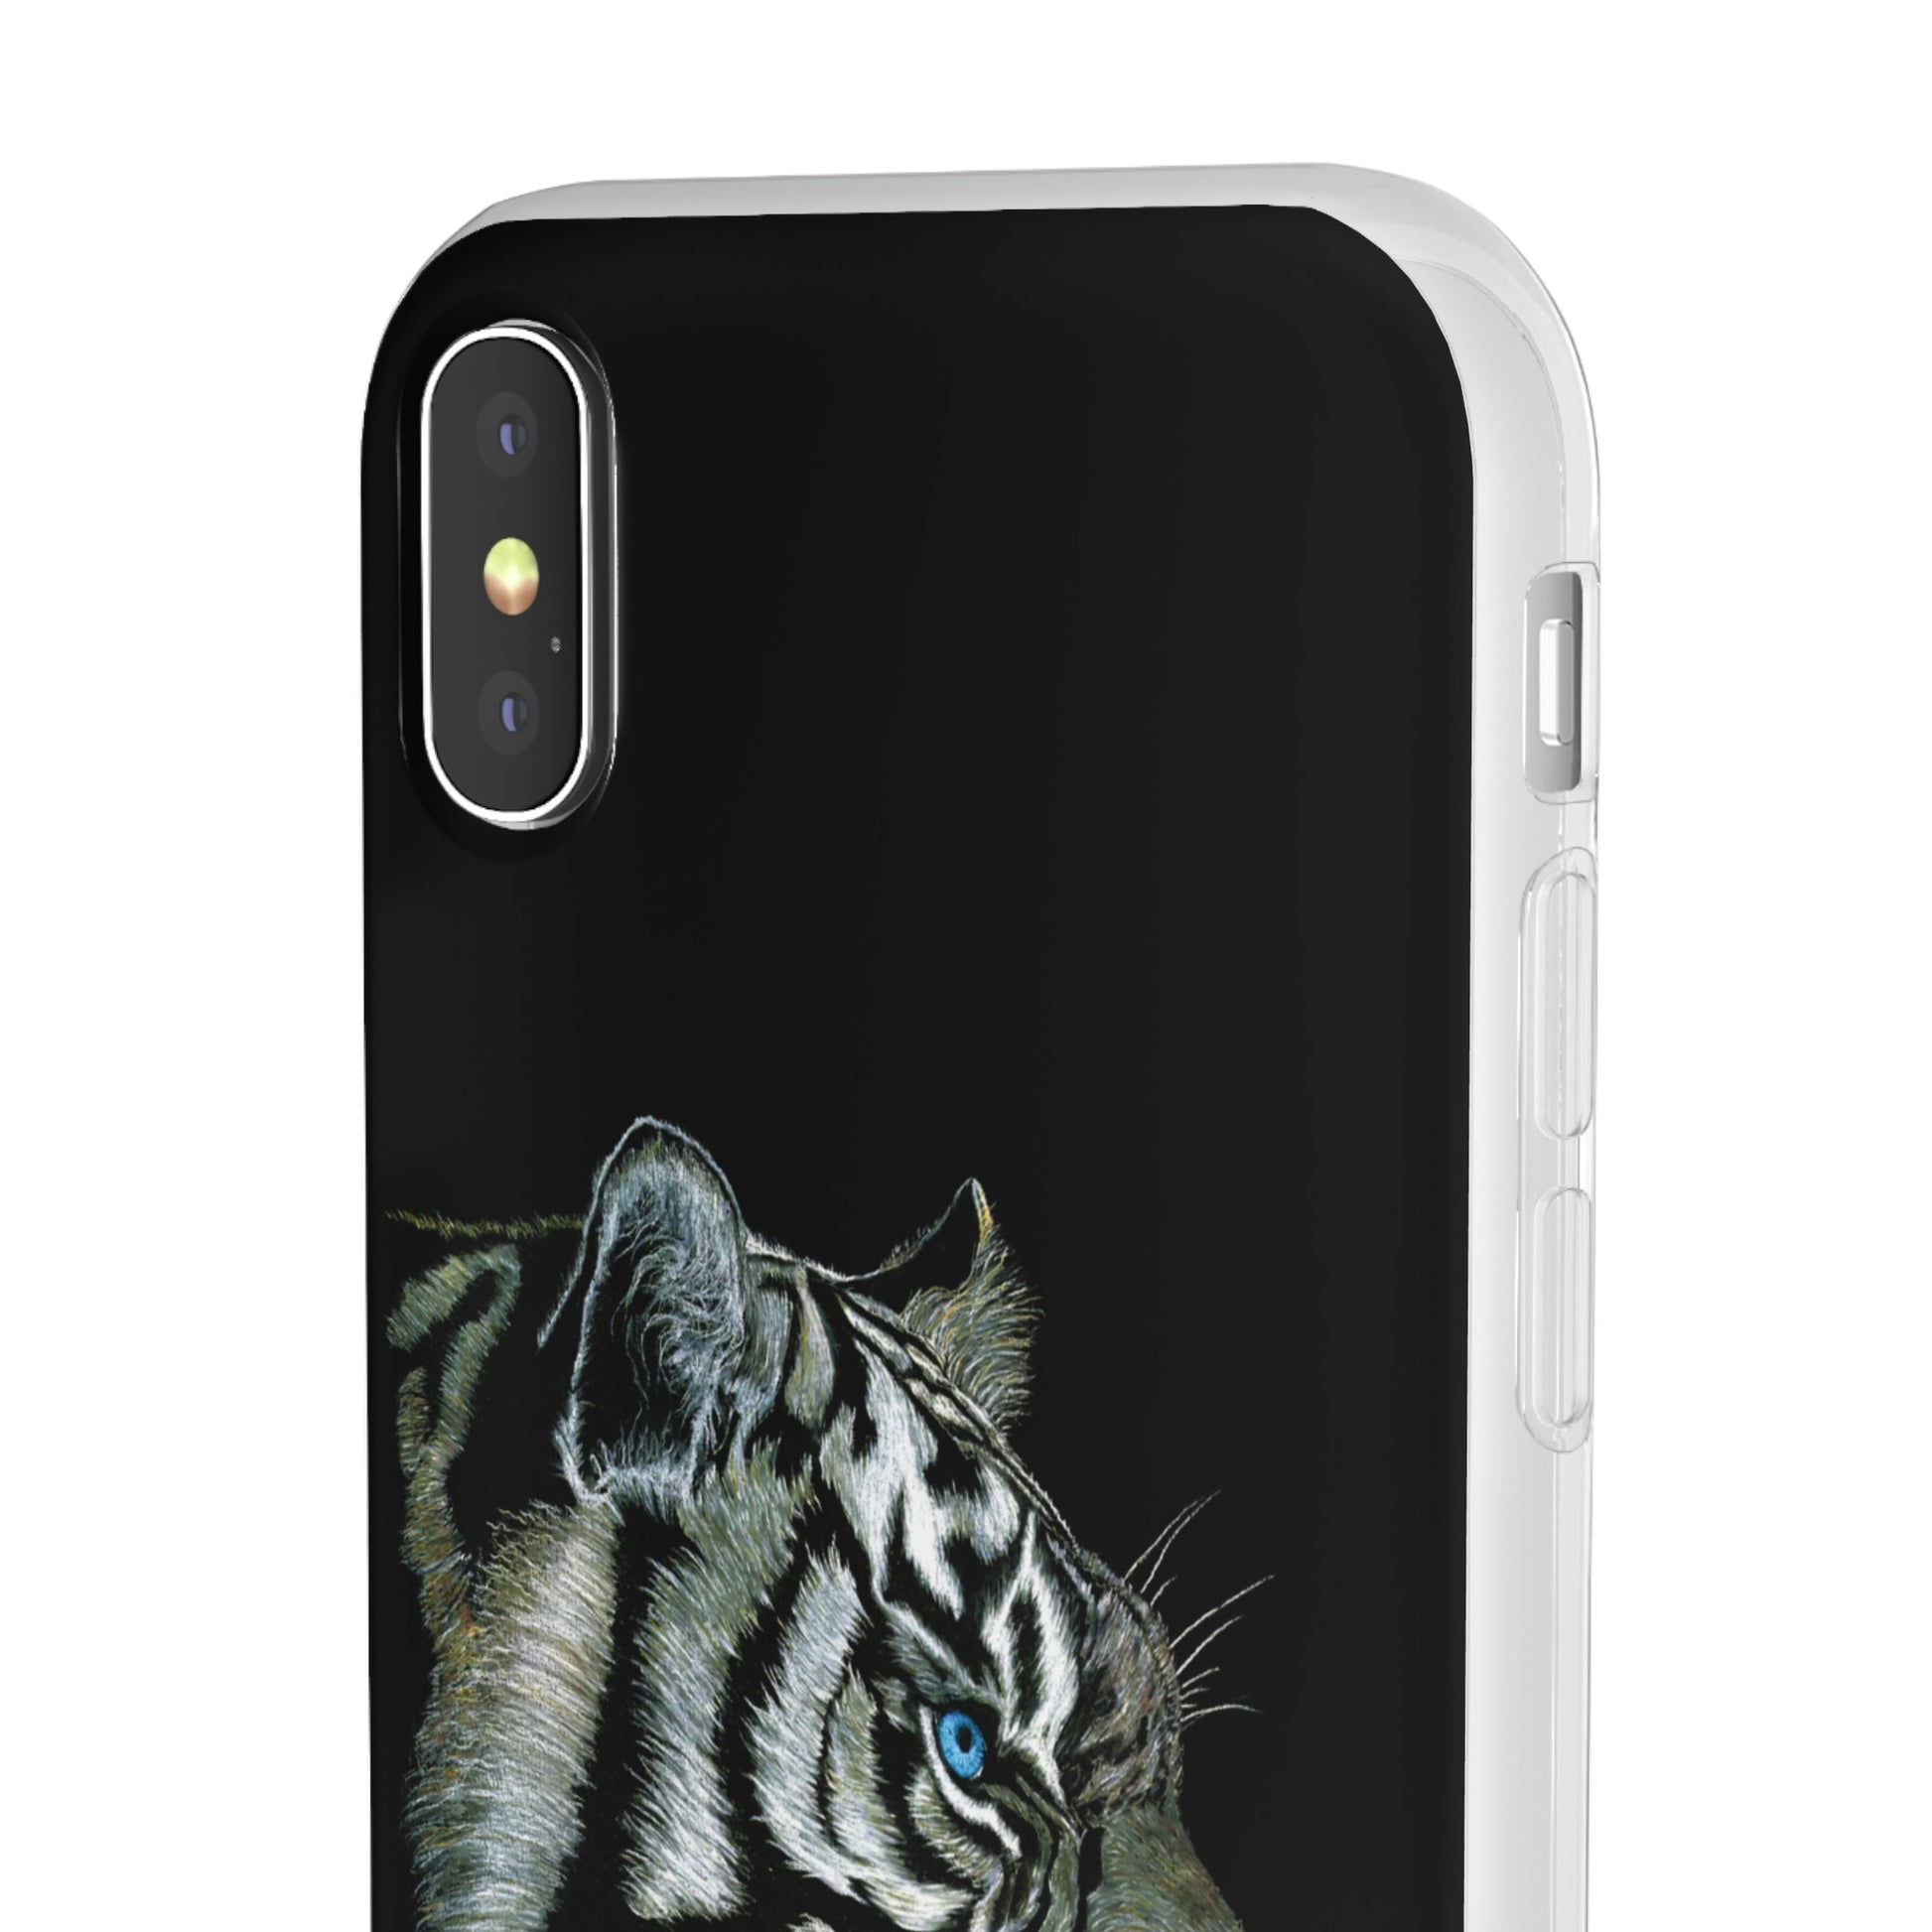 Flexi Cases - "White Tiger"